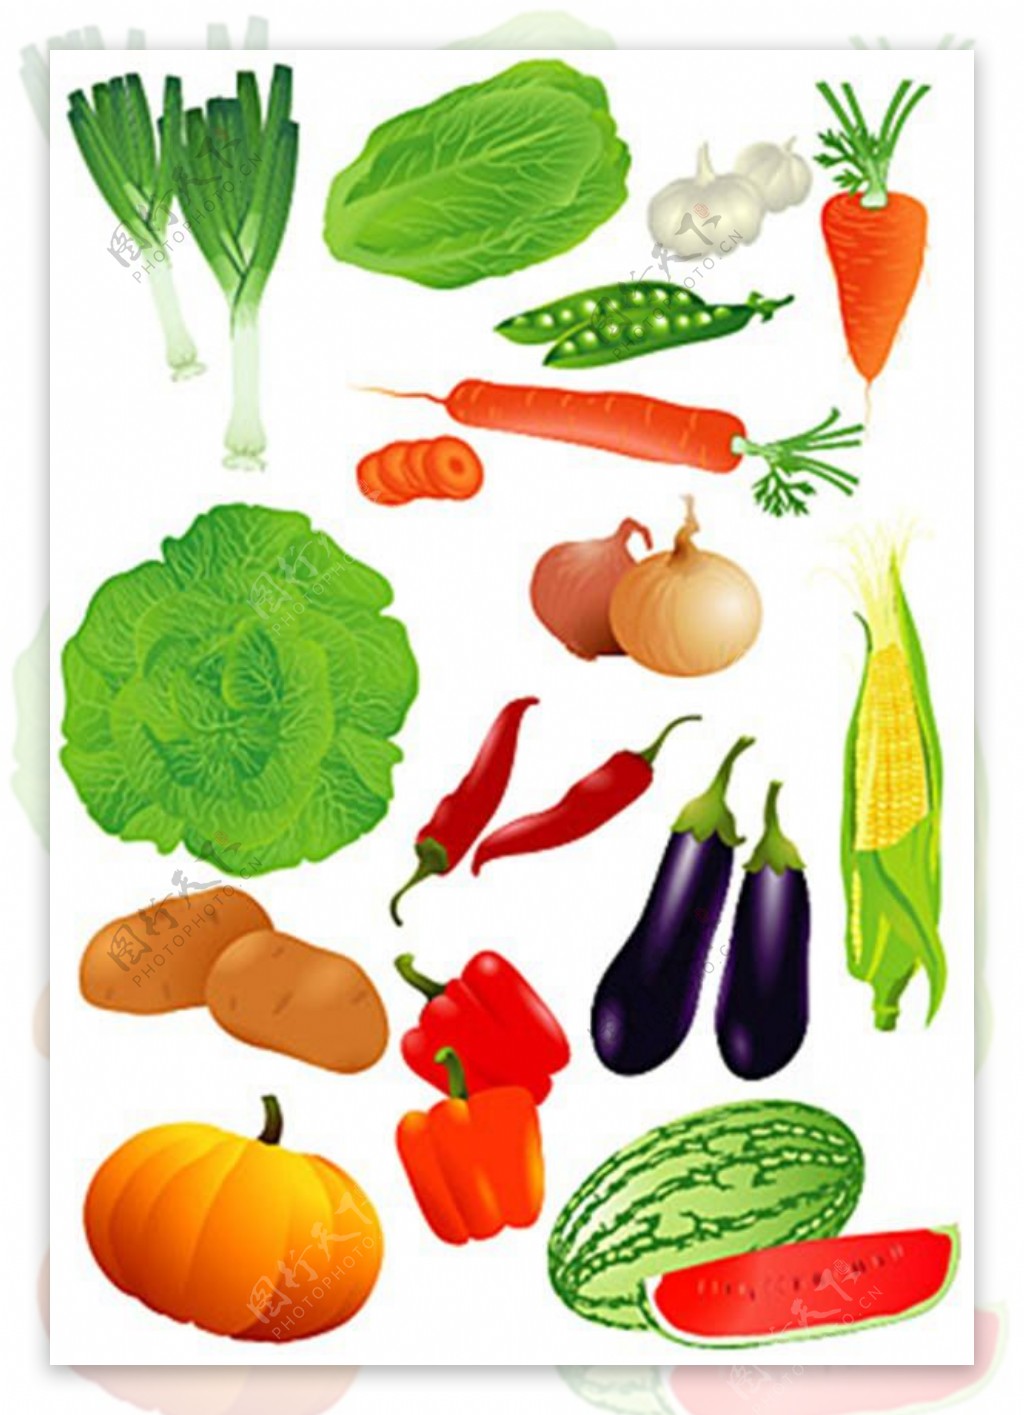 水果蔬菜矢量素材